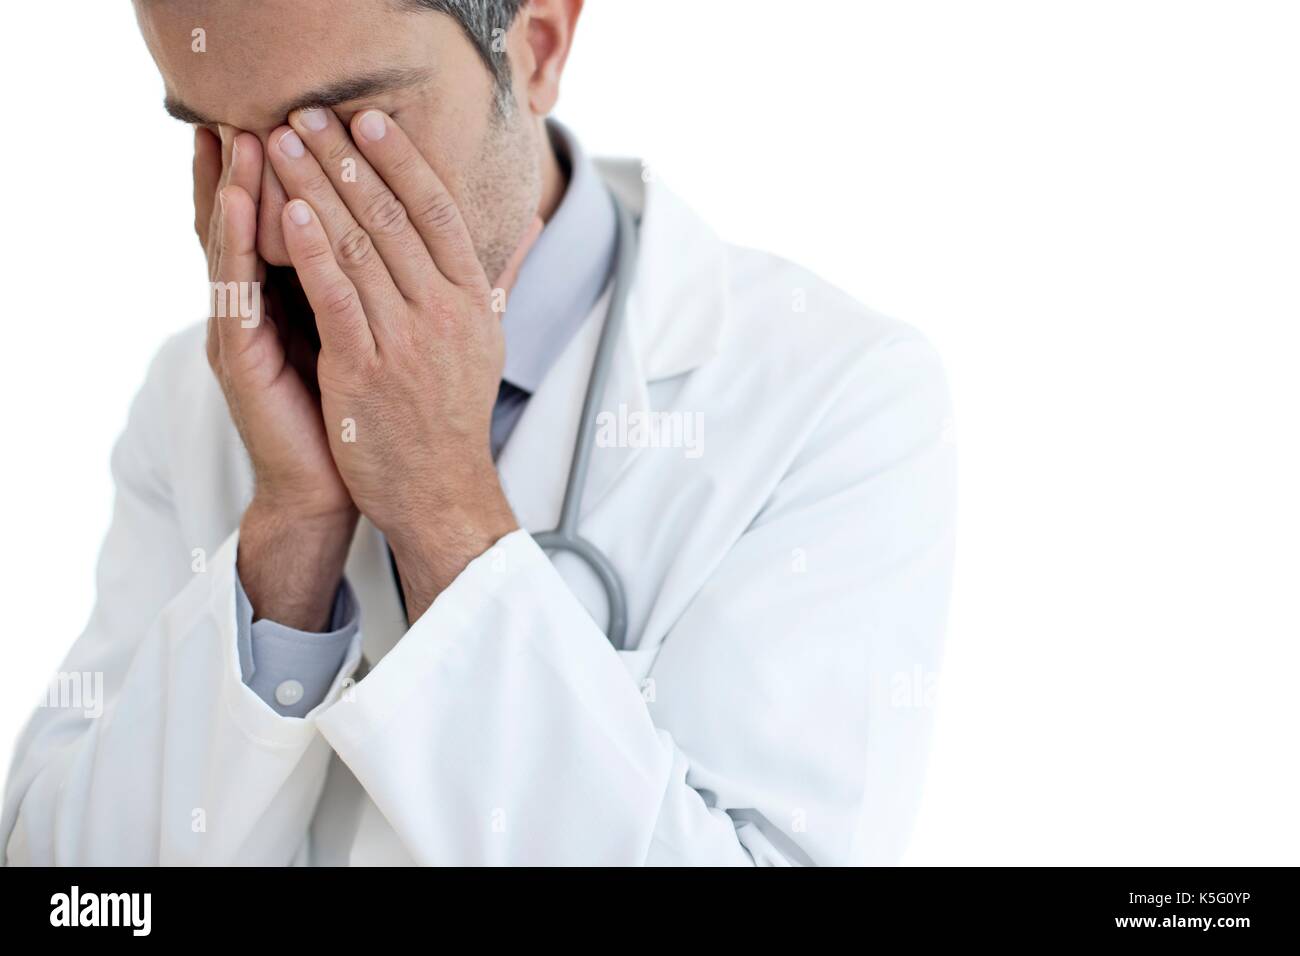 Male doctor rubbing eyes, portrait. Stock Photo